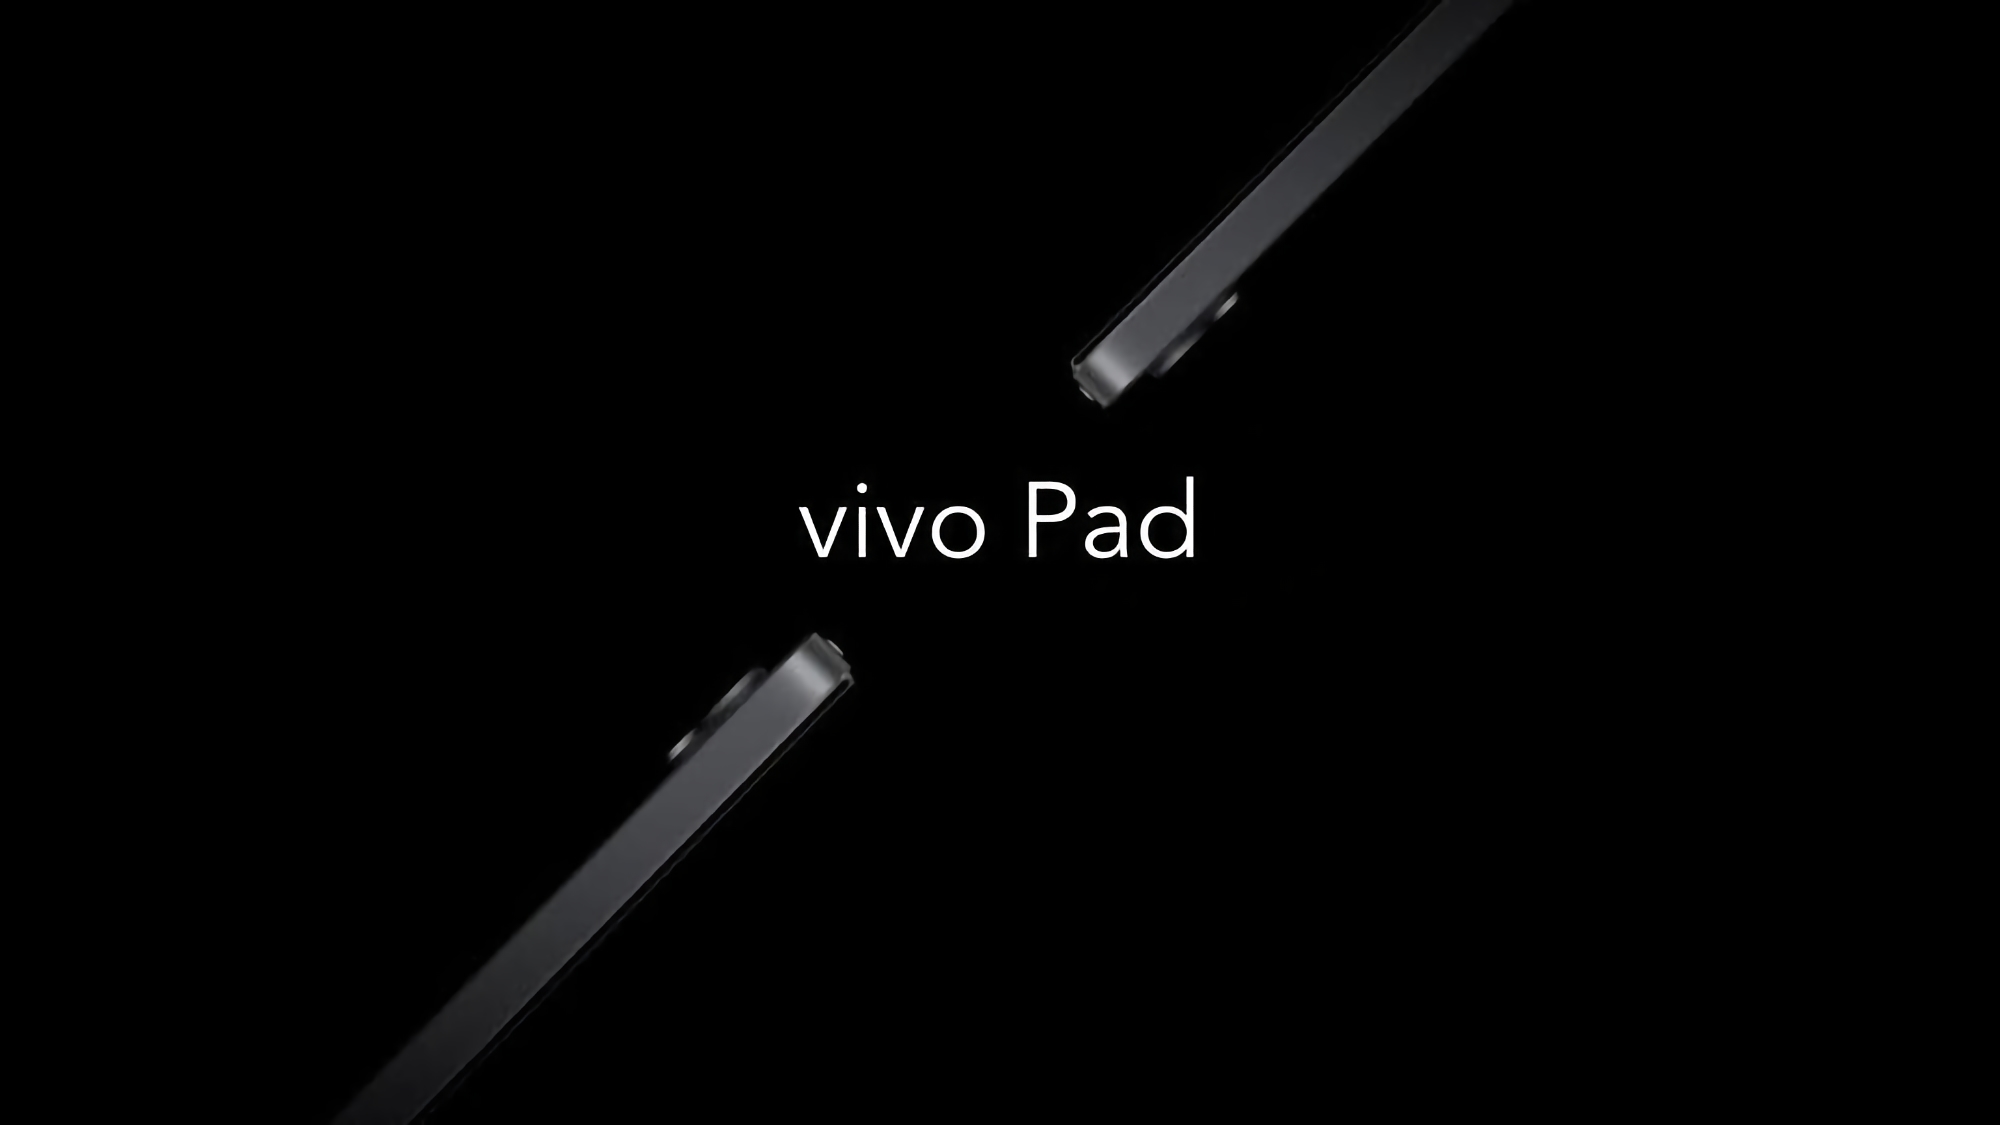 Vivo va a lanzar dos líneas de tablets, soportarán el stylus y saldrán este año